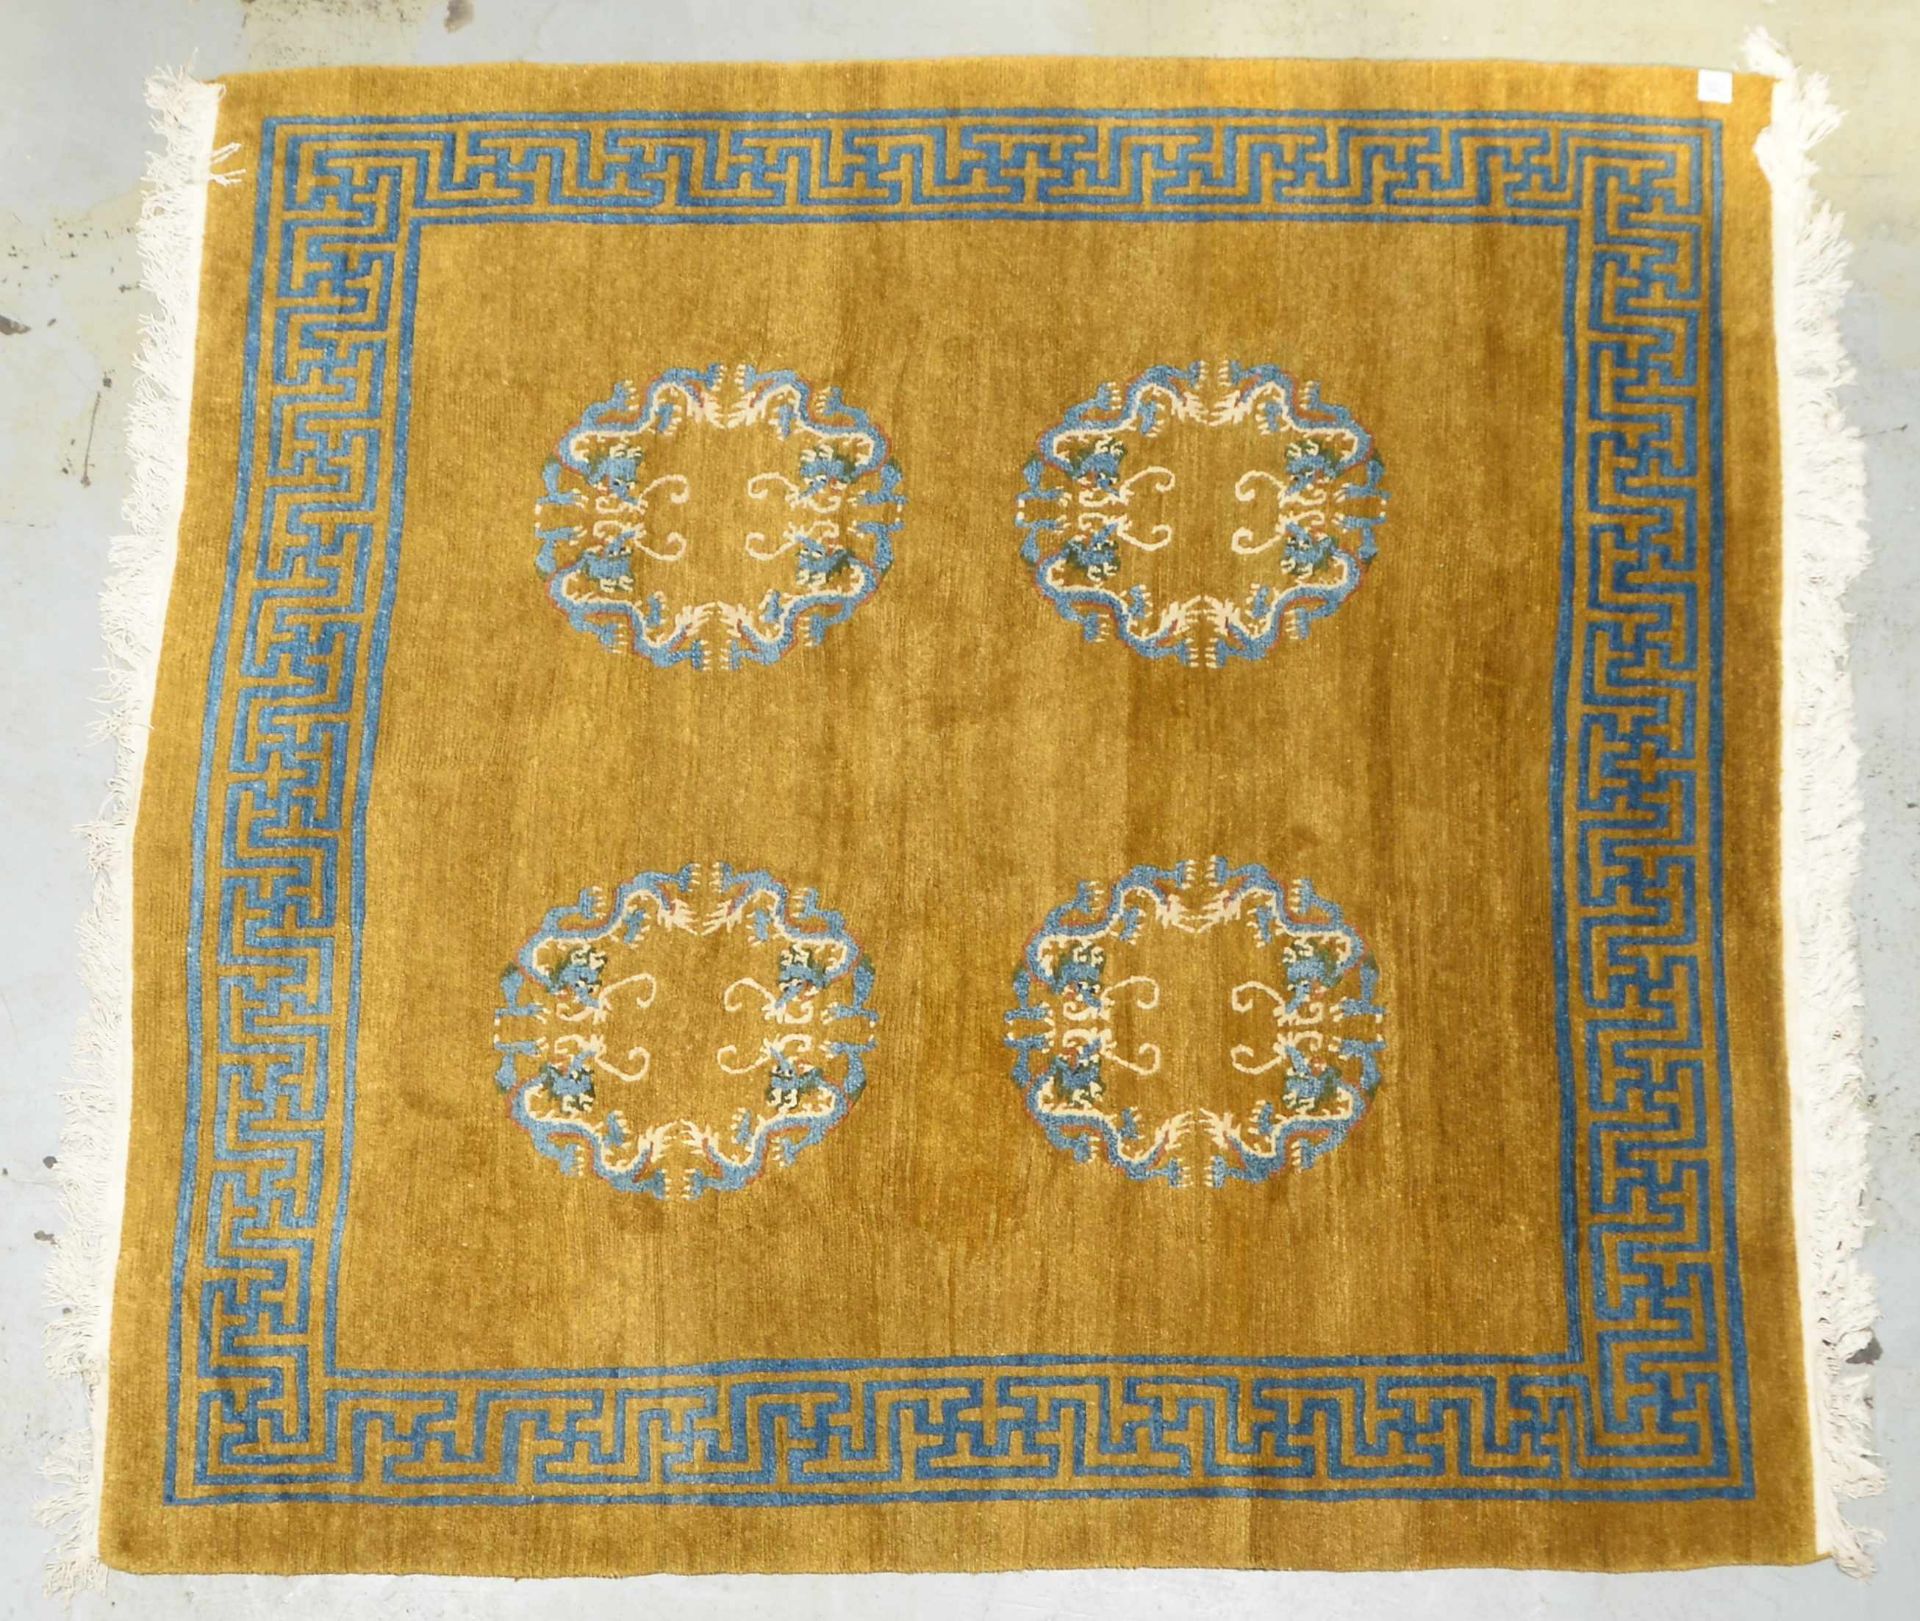 Teppich (China), mit typischen Motiven (-Drachenreigen-) und Maeanderborduere, hochflorig - Flor in 